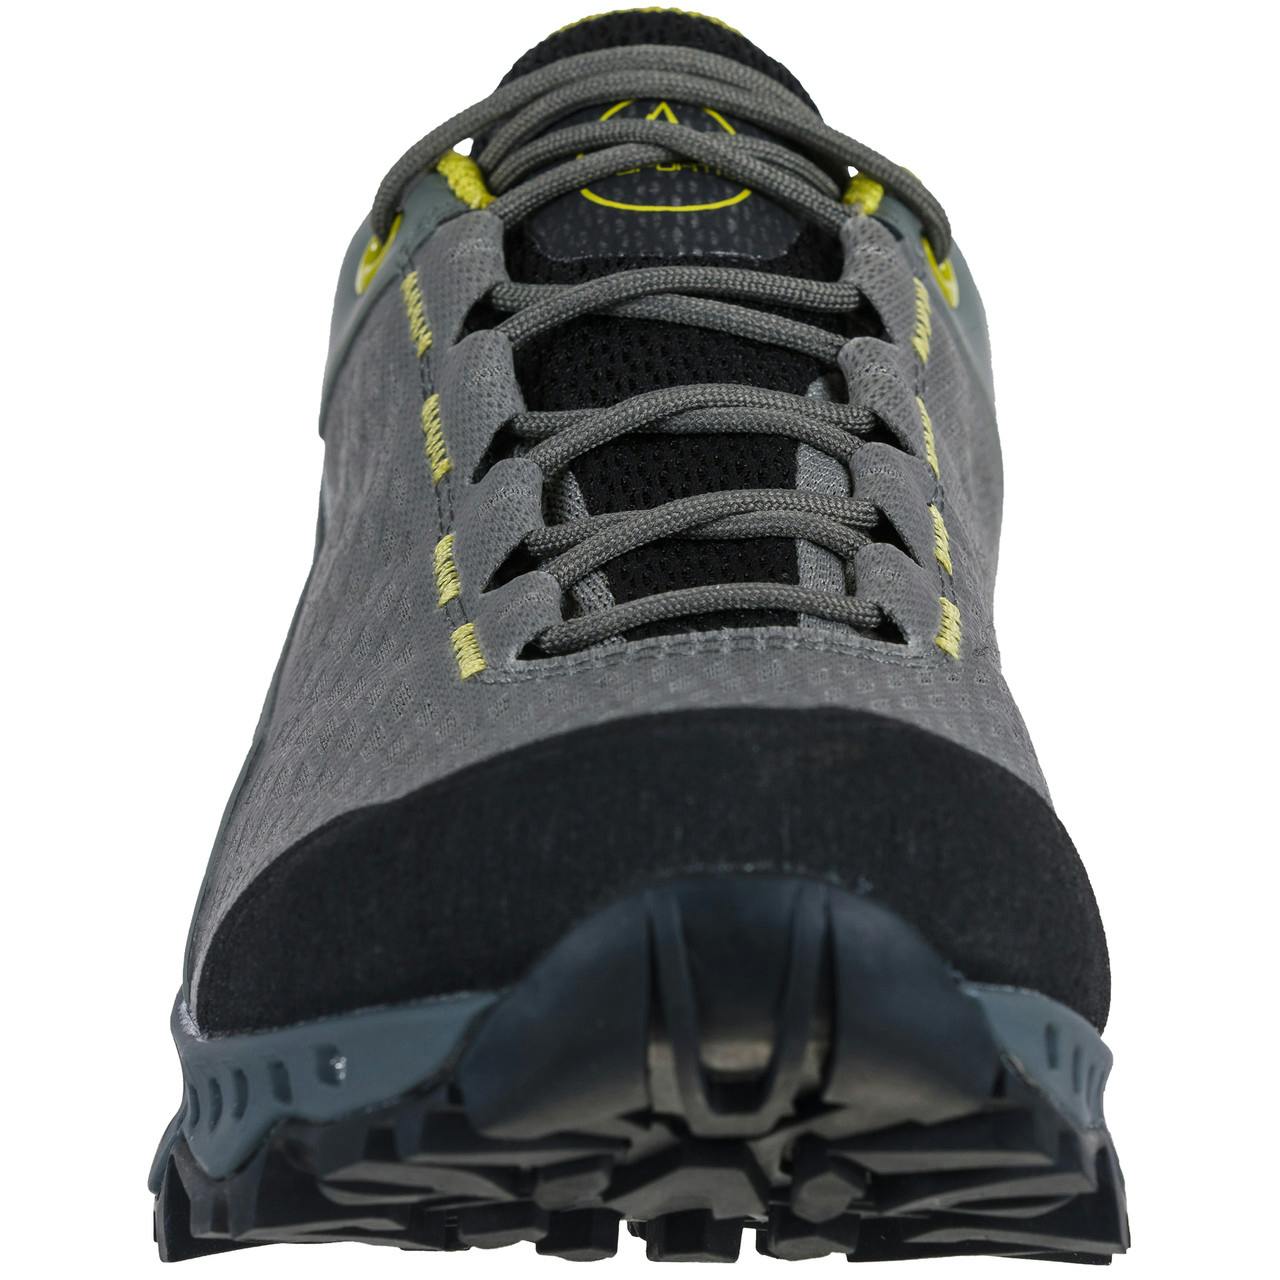 Chaussures de randonnée légère Spire GTX Surround Argile/Céleri